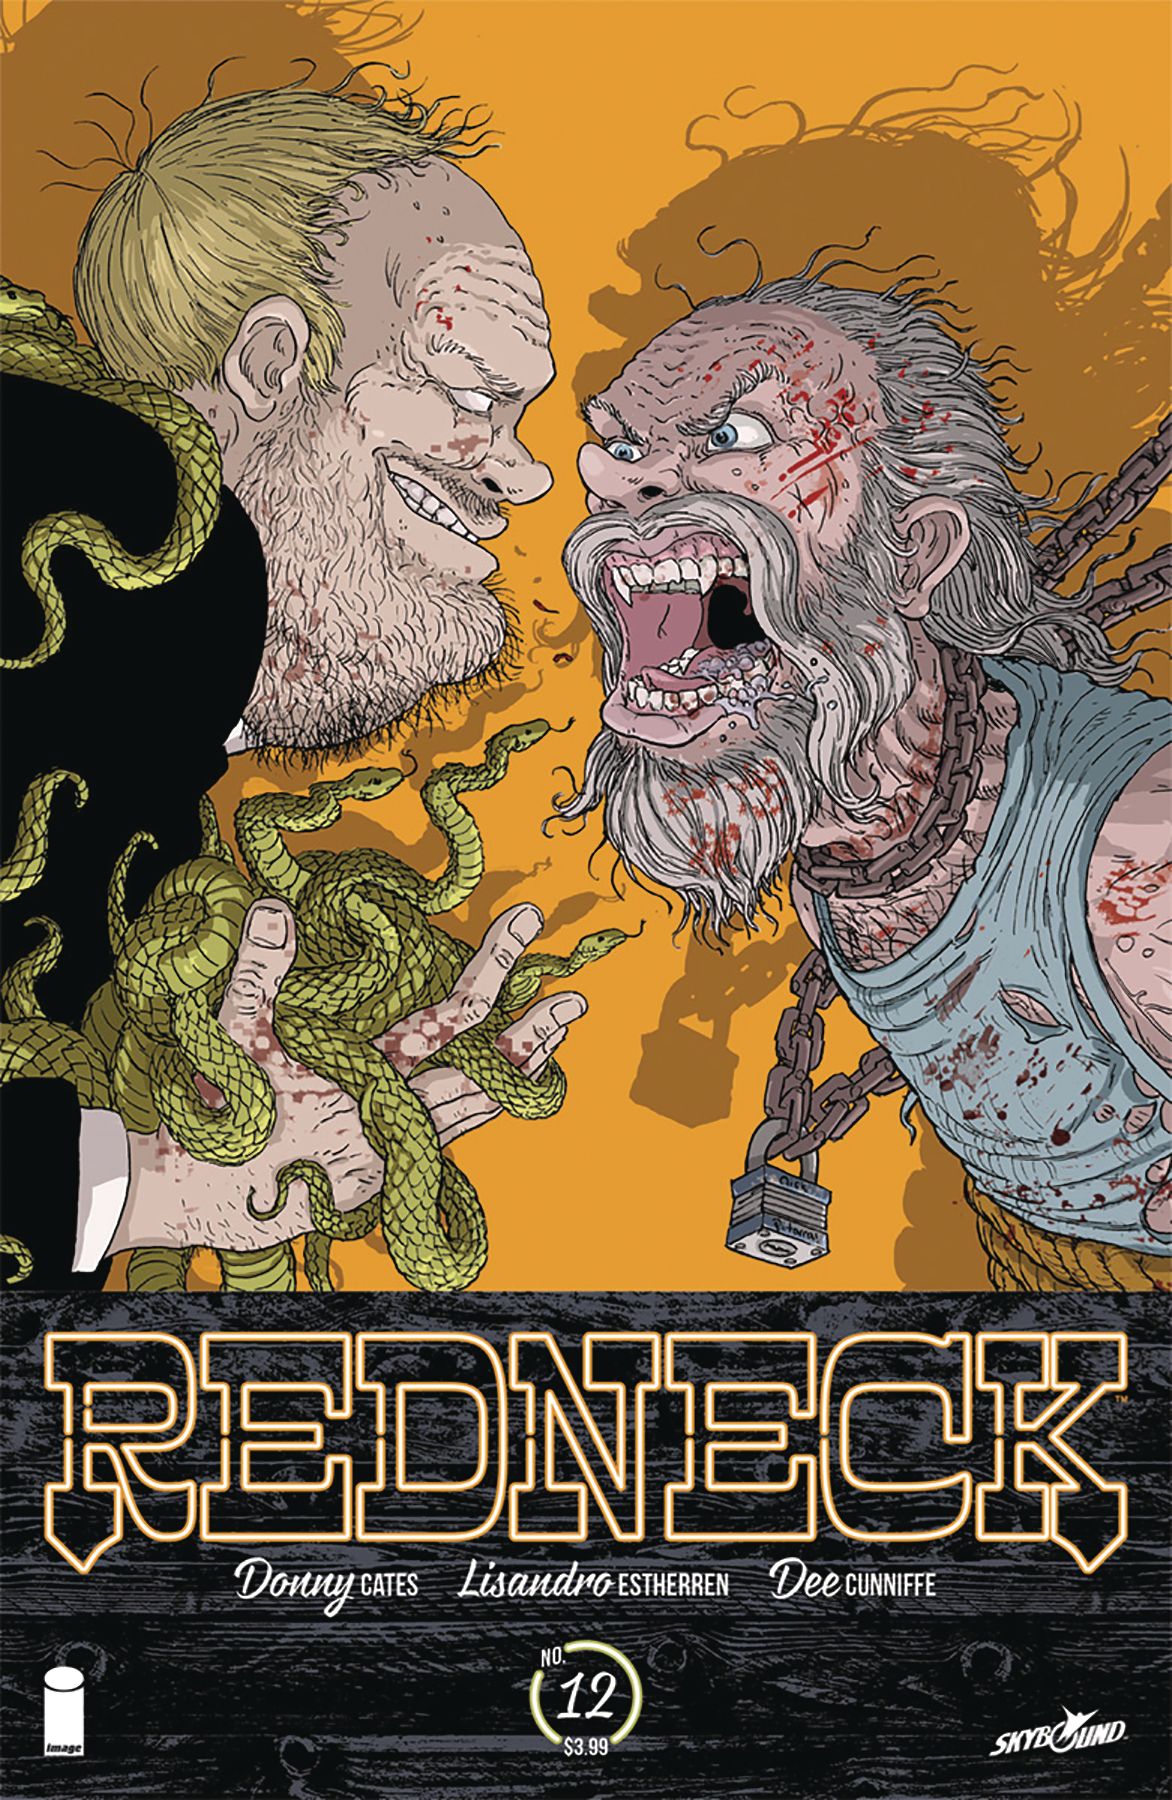 Redneck #12 Comic